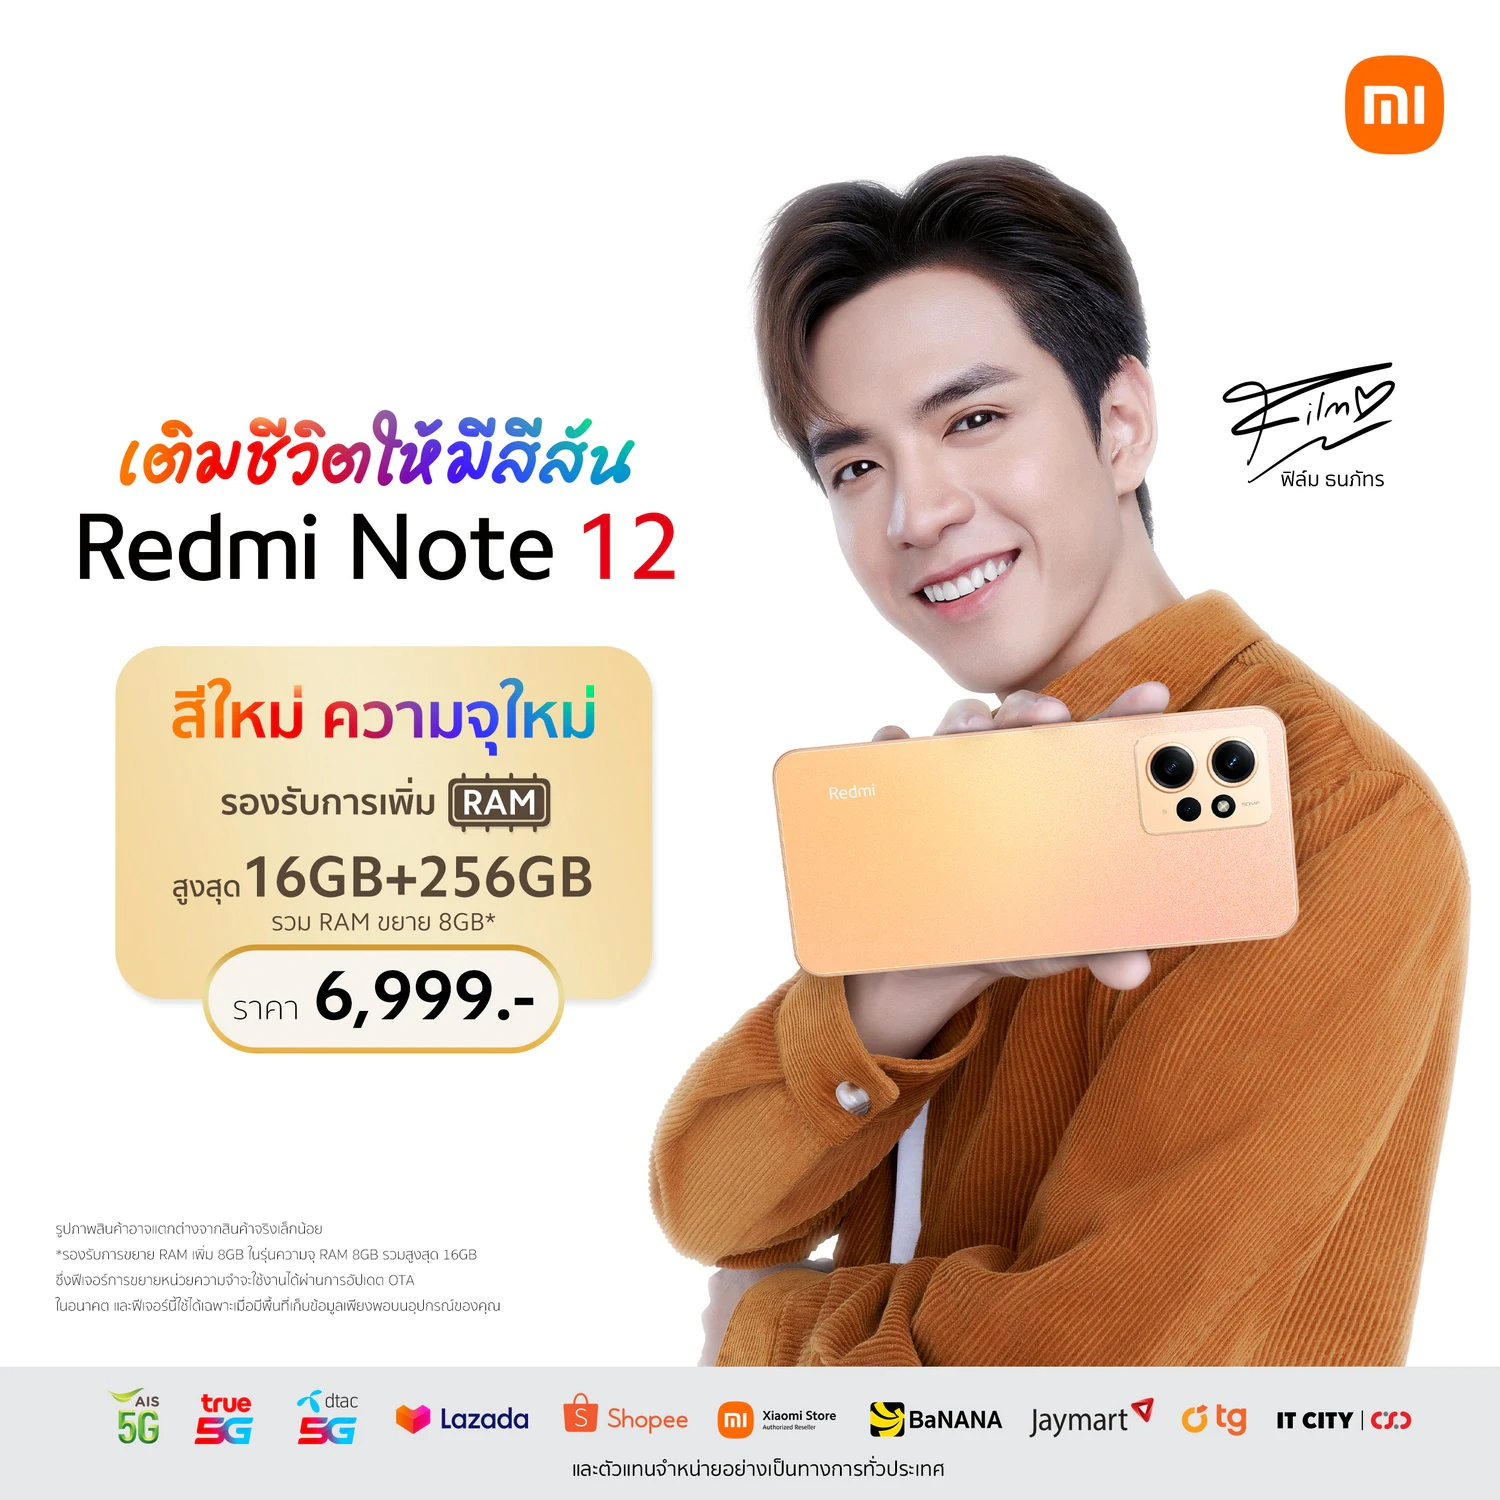 Redmi Note 12 6 | Redmi Note 12 | Redmi Note 12 สีใหม่ ‘Sunrise Gold’ วางจำหน่ายพร้อมความจุใหม่ใหญ่ขึ้น! ในราคาเพียง 6,999 บาท